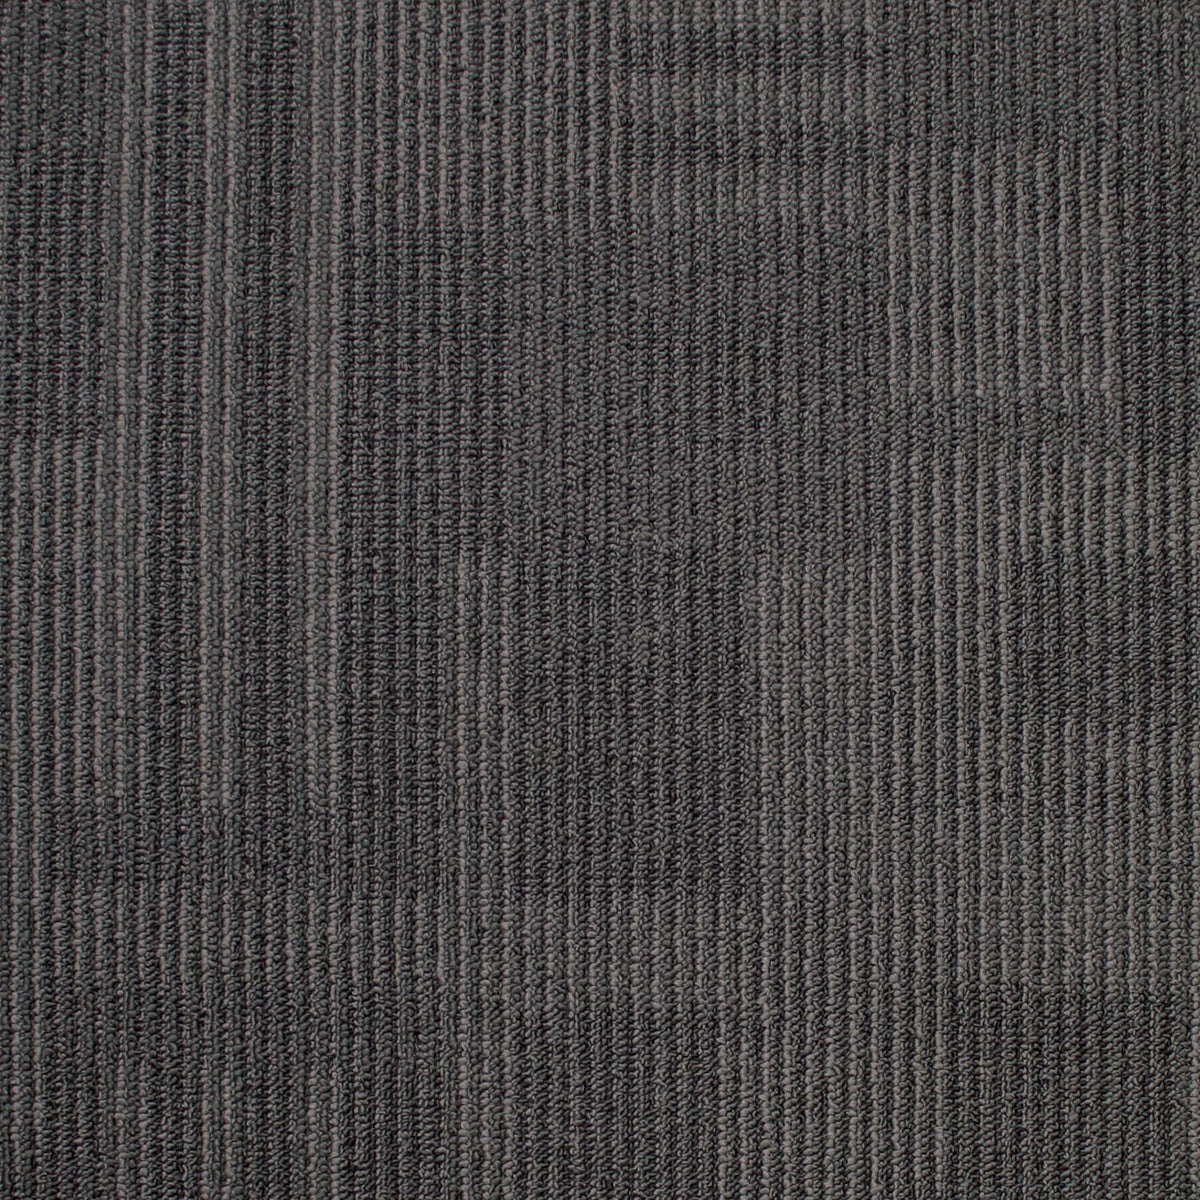 Kraus - Dimensions - Carpet Tile - Glacier